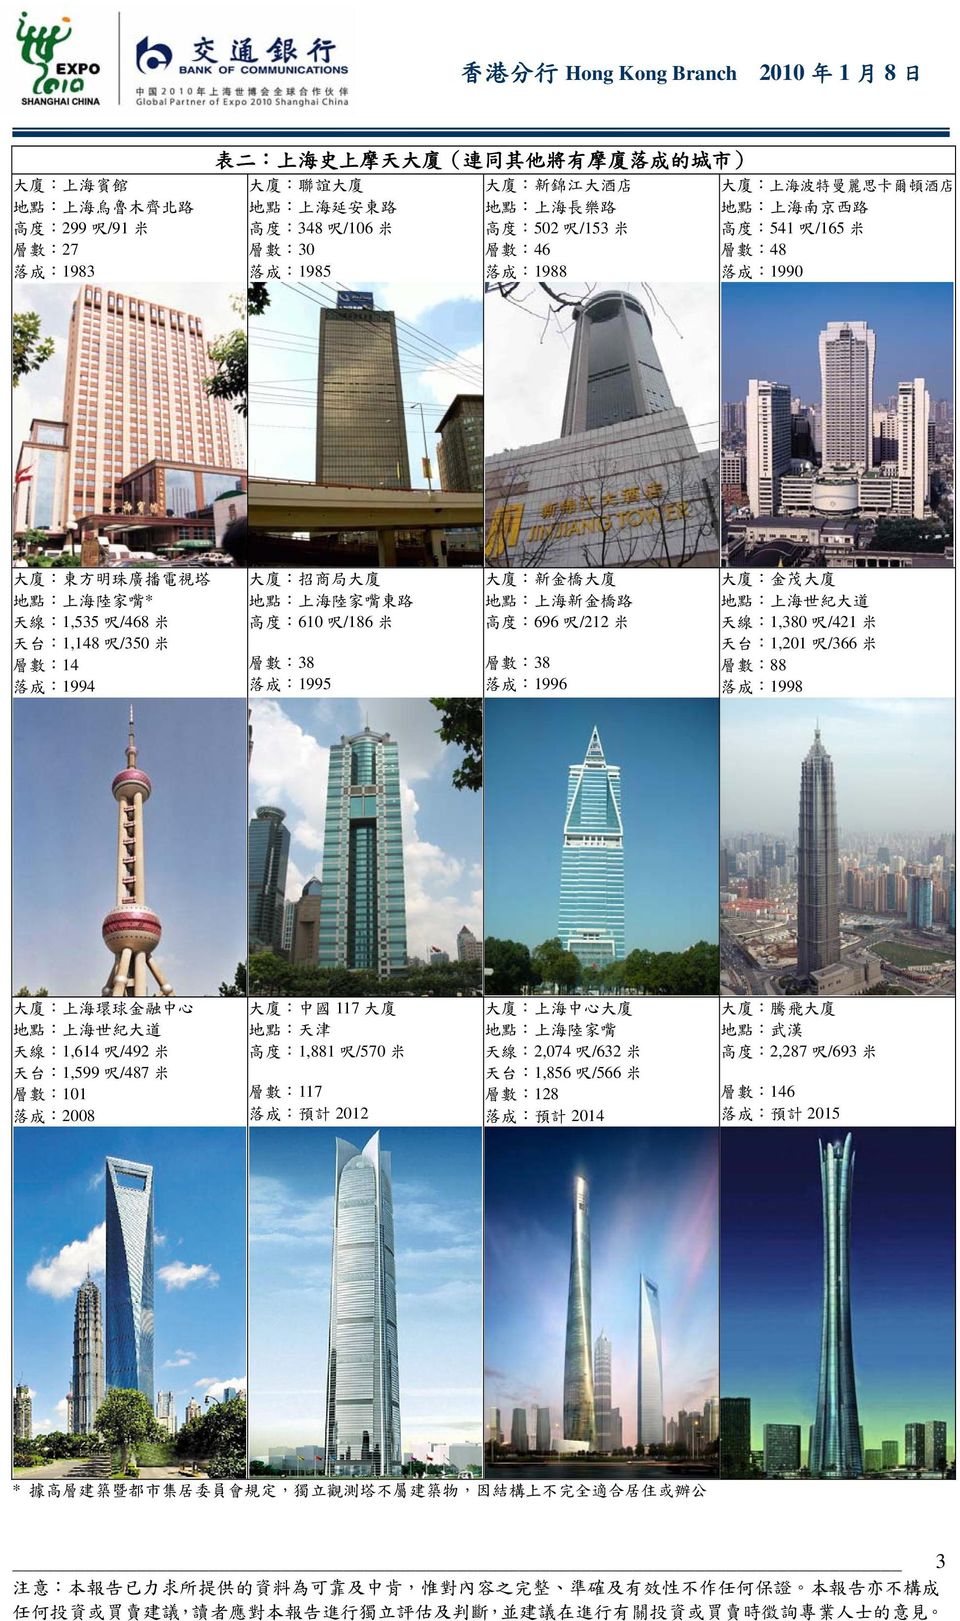 /468 米 天 台 :1,148 呎 /35 米 層 數 :14 落 成 :1994 大 廈 : 招 商 局 大 廈 地 點 : 上 海 陸 家 嘴 東 路 高 度 :61 呎 /186 米 層 數 :38 落 成 :1995 大 廈 : 新 金 橋 大 廈 地 點 : 上 海 新 金 橋 路 高 度 :696 呎 /212 米 層 數 :38 落 成 :1996 大 廈 : 金 茂 大 廈